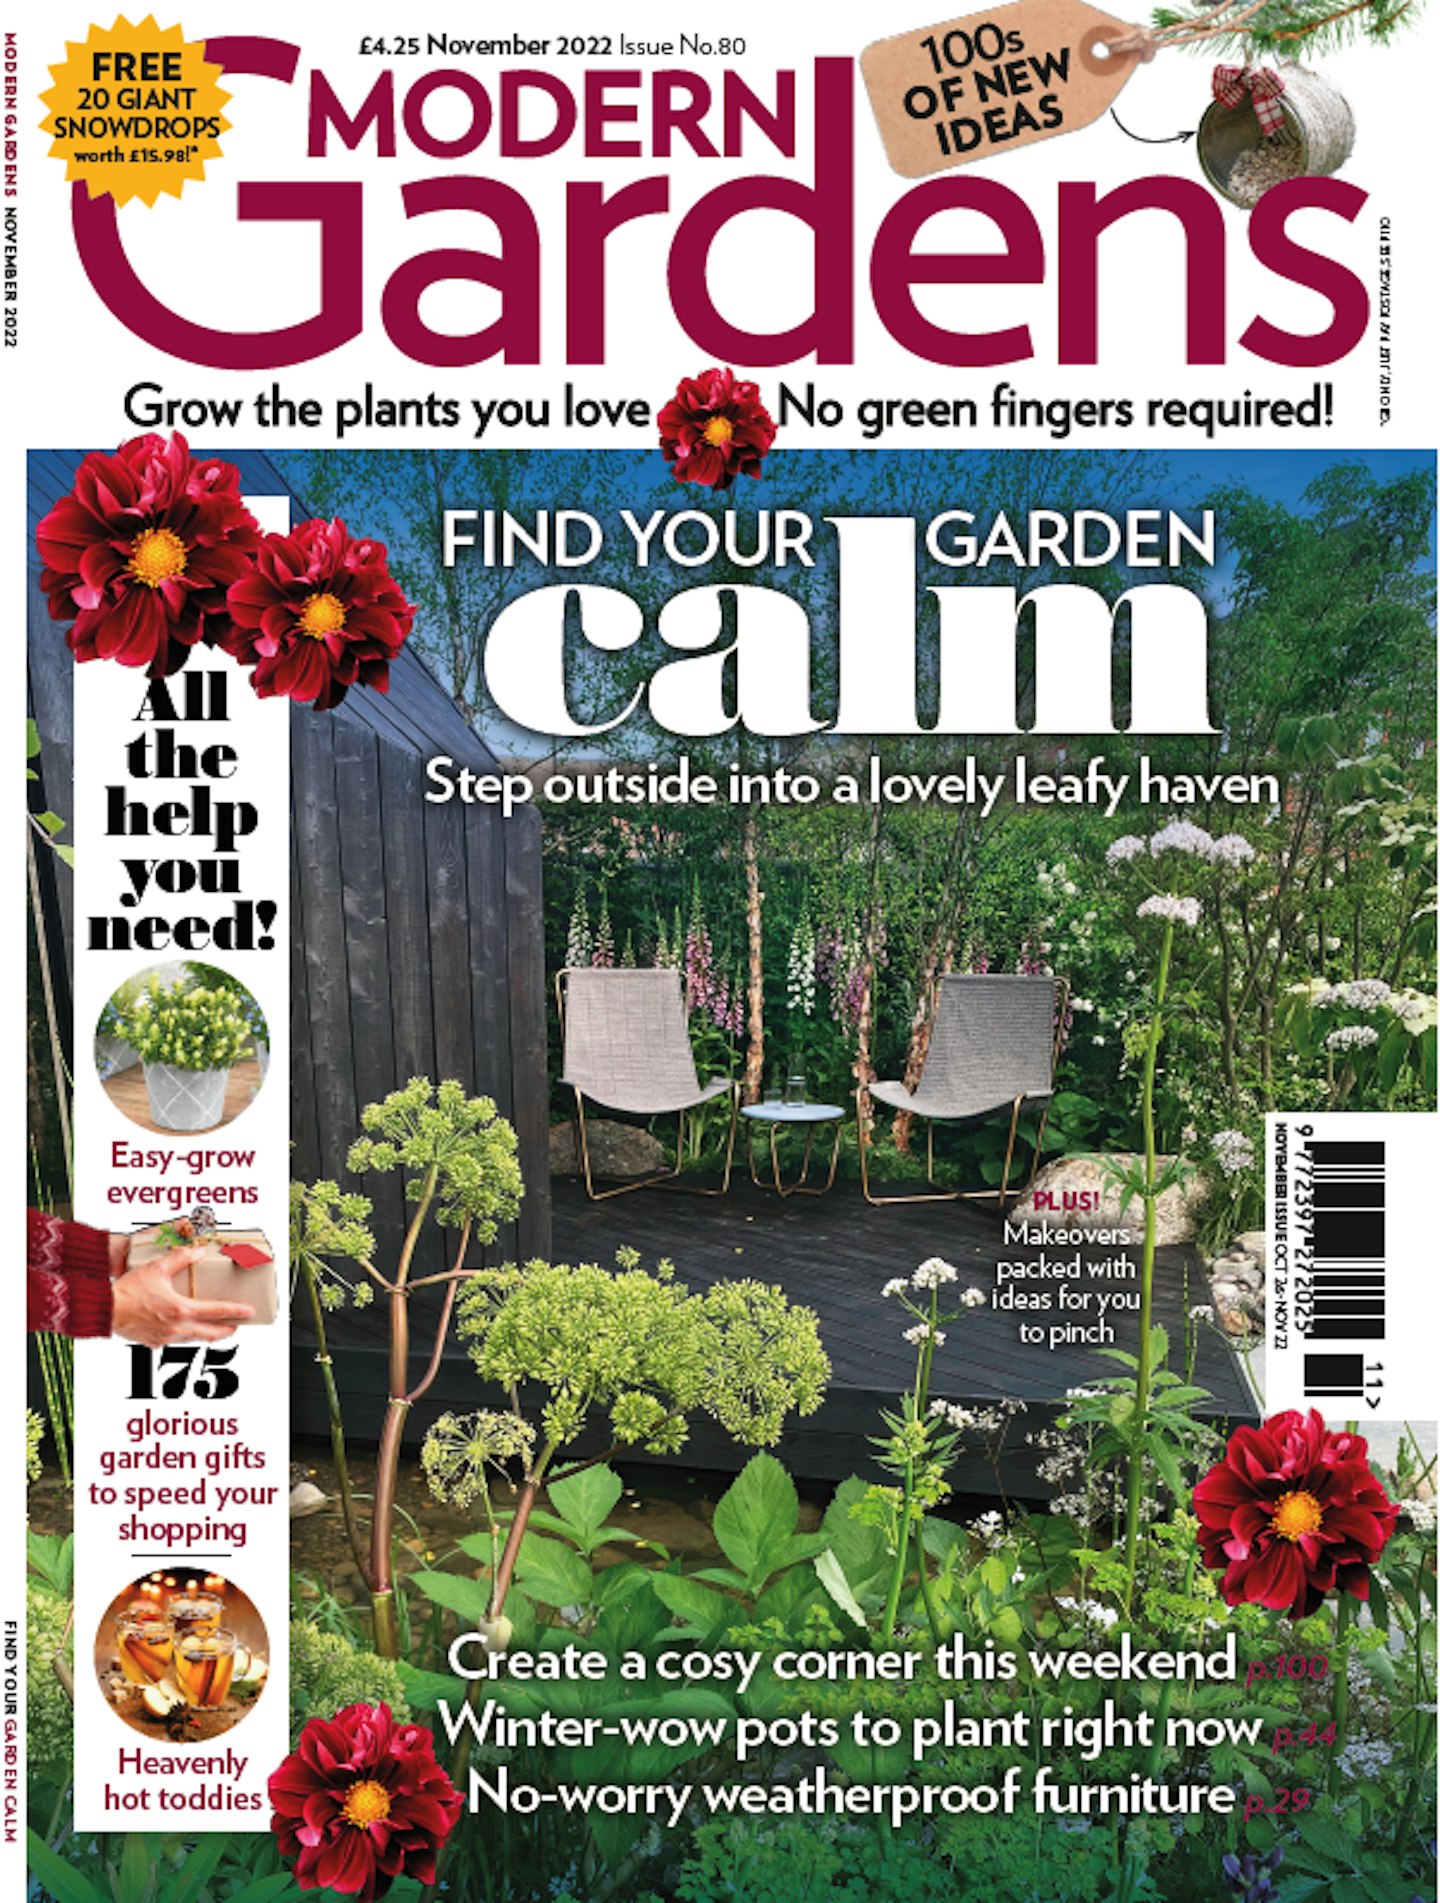 Modern-Gardens-November-issue-1